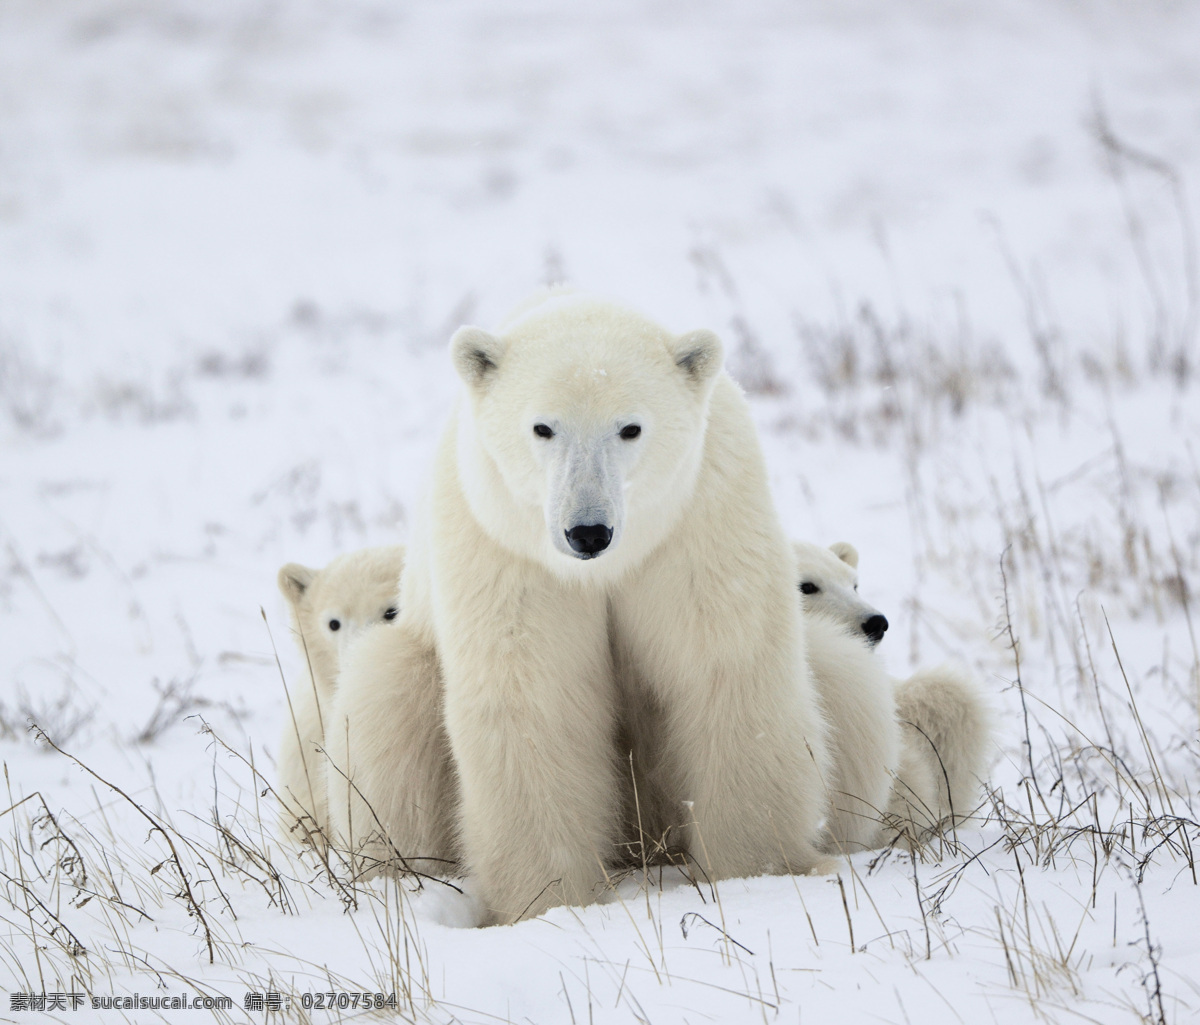 坐在 雪地 里 北极熊 熊 动物 野生动物 动物世界 陆地动物 动物摄影 生物世界